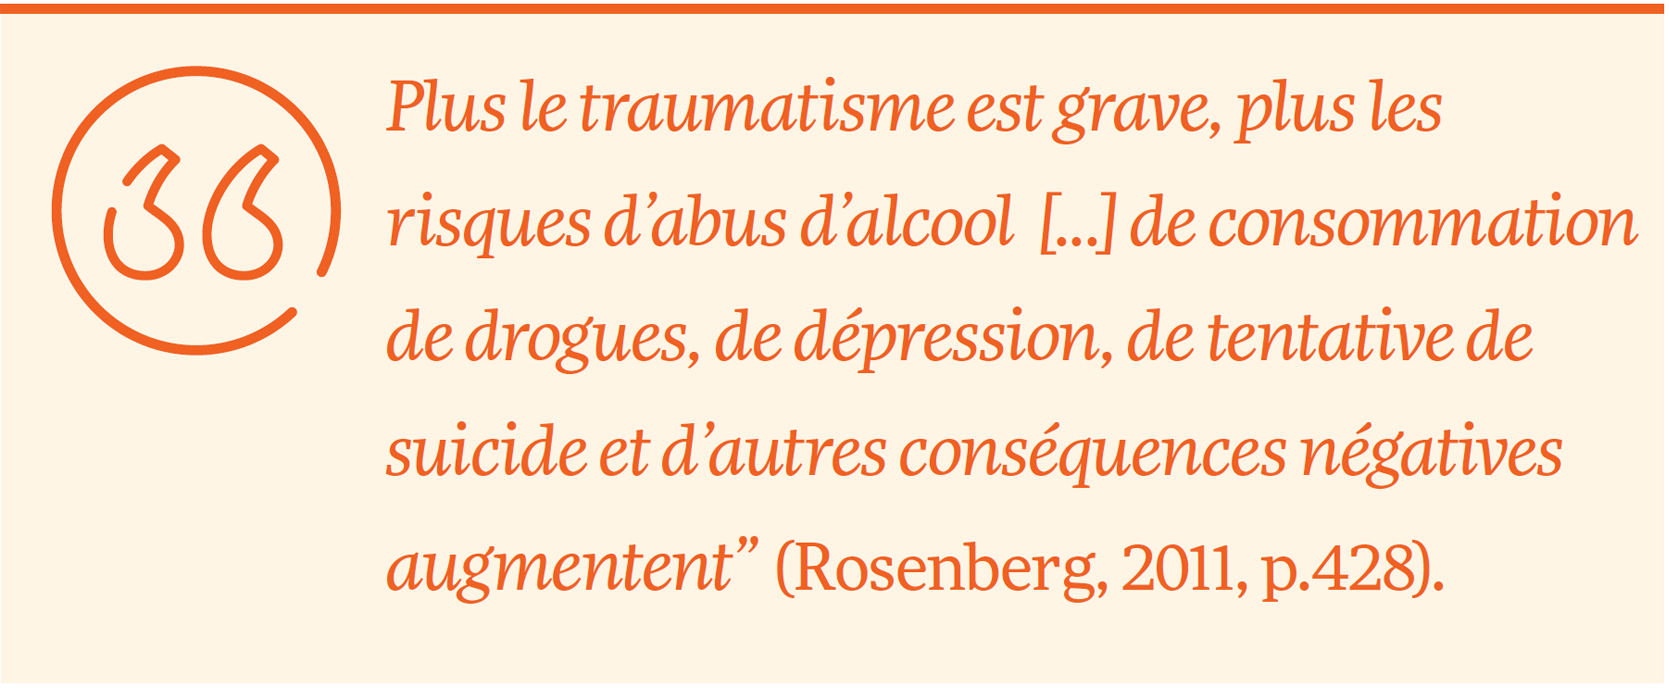 Plus le traumatisme est grave, plus les risques d’abus d’alcool [...] de consommation de drogues, de dépression, de tentative de suicide et d’autres conséquences négatives augmentent” (Rosenberg, 2011, p.428).